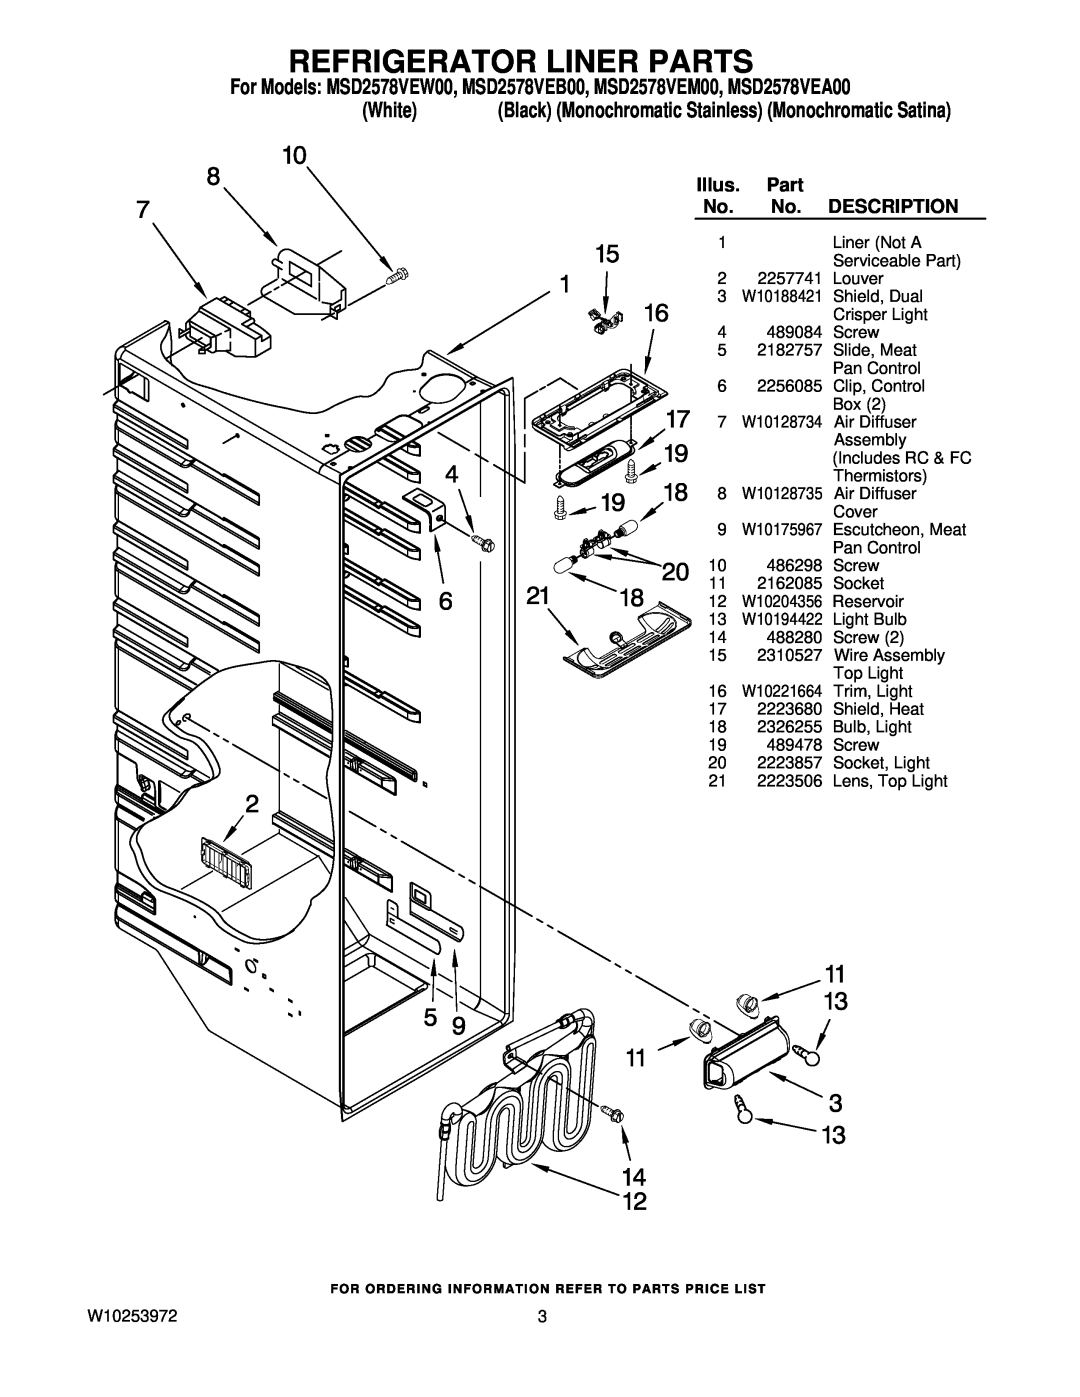 Maytag MSD2578VEB00, MSD2578VEW00, MSD2578VEM00, MSD2578VEA00 manual Refrigerator Liner Parts, Illus, Description, White 